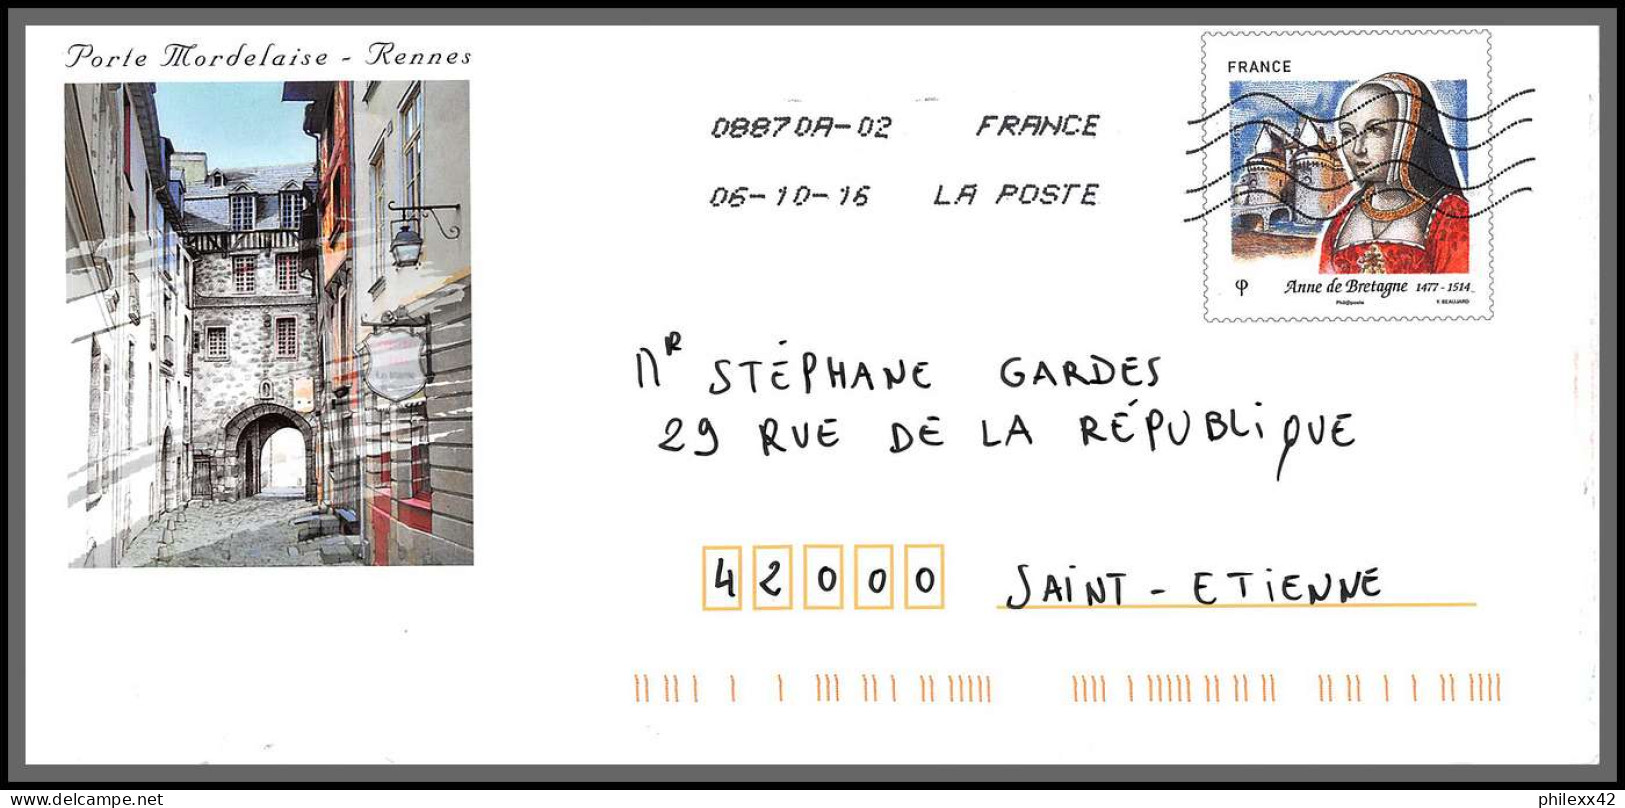 95889 - Lot De 15 Courriers Lettres Enveloppes De L'année 2018 Divers Affranchissements En EUROS - Storia Postale